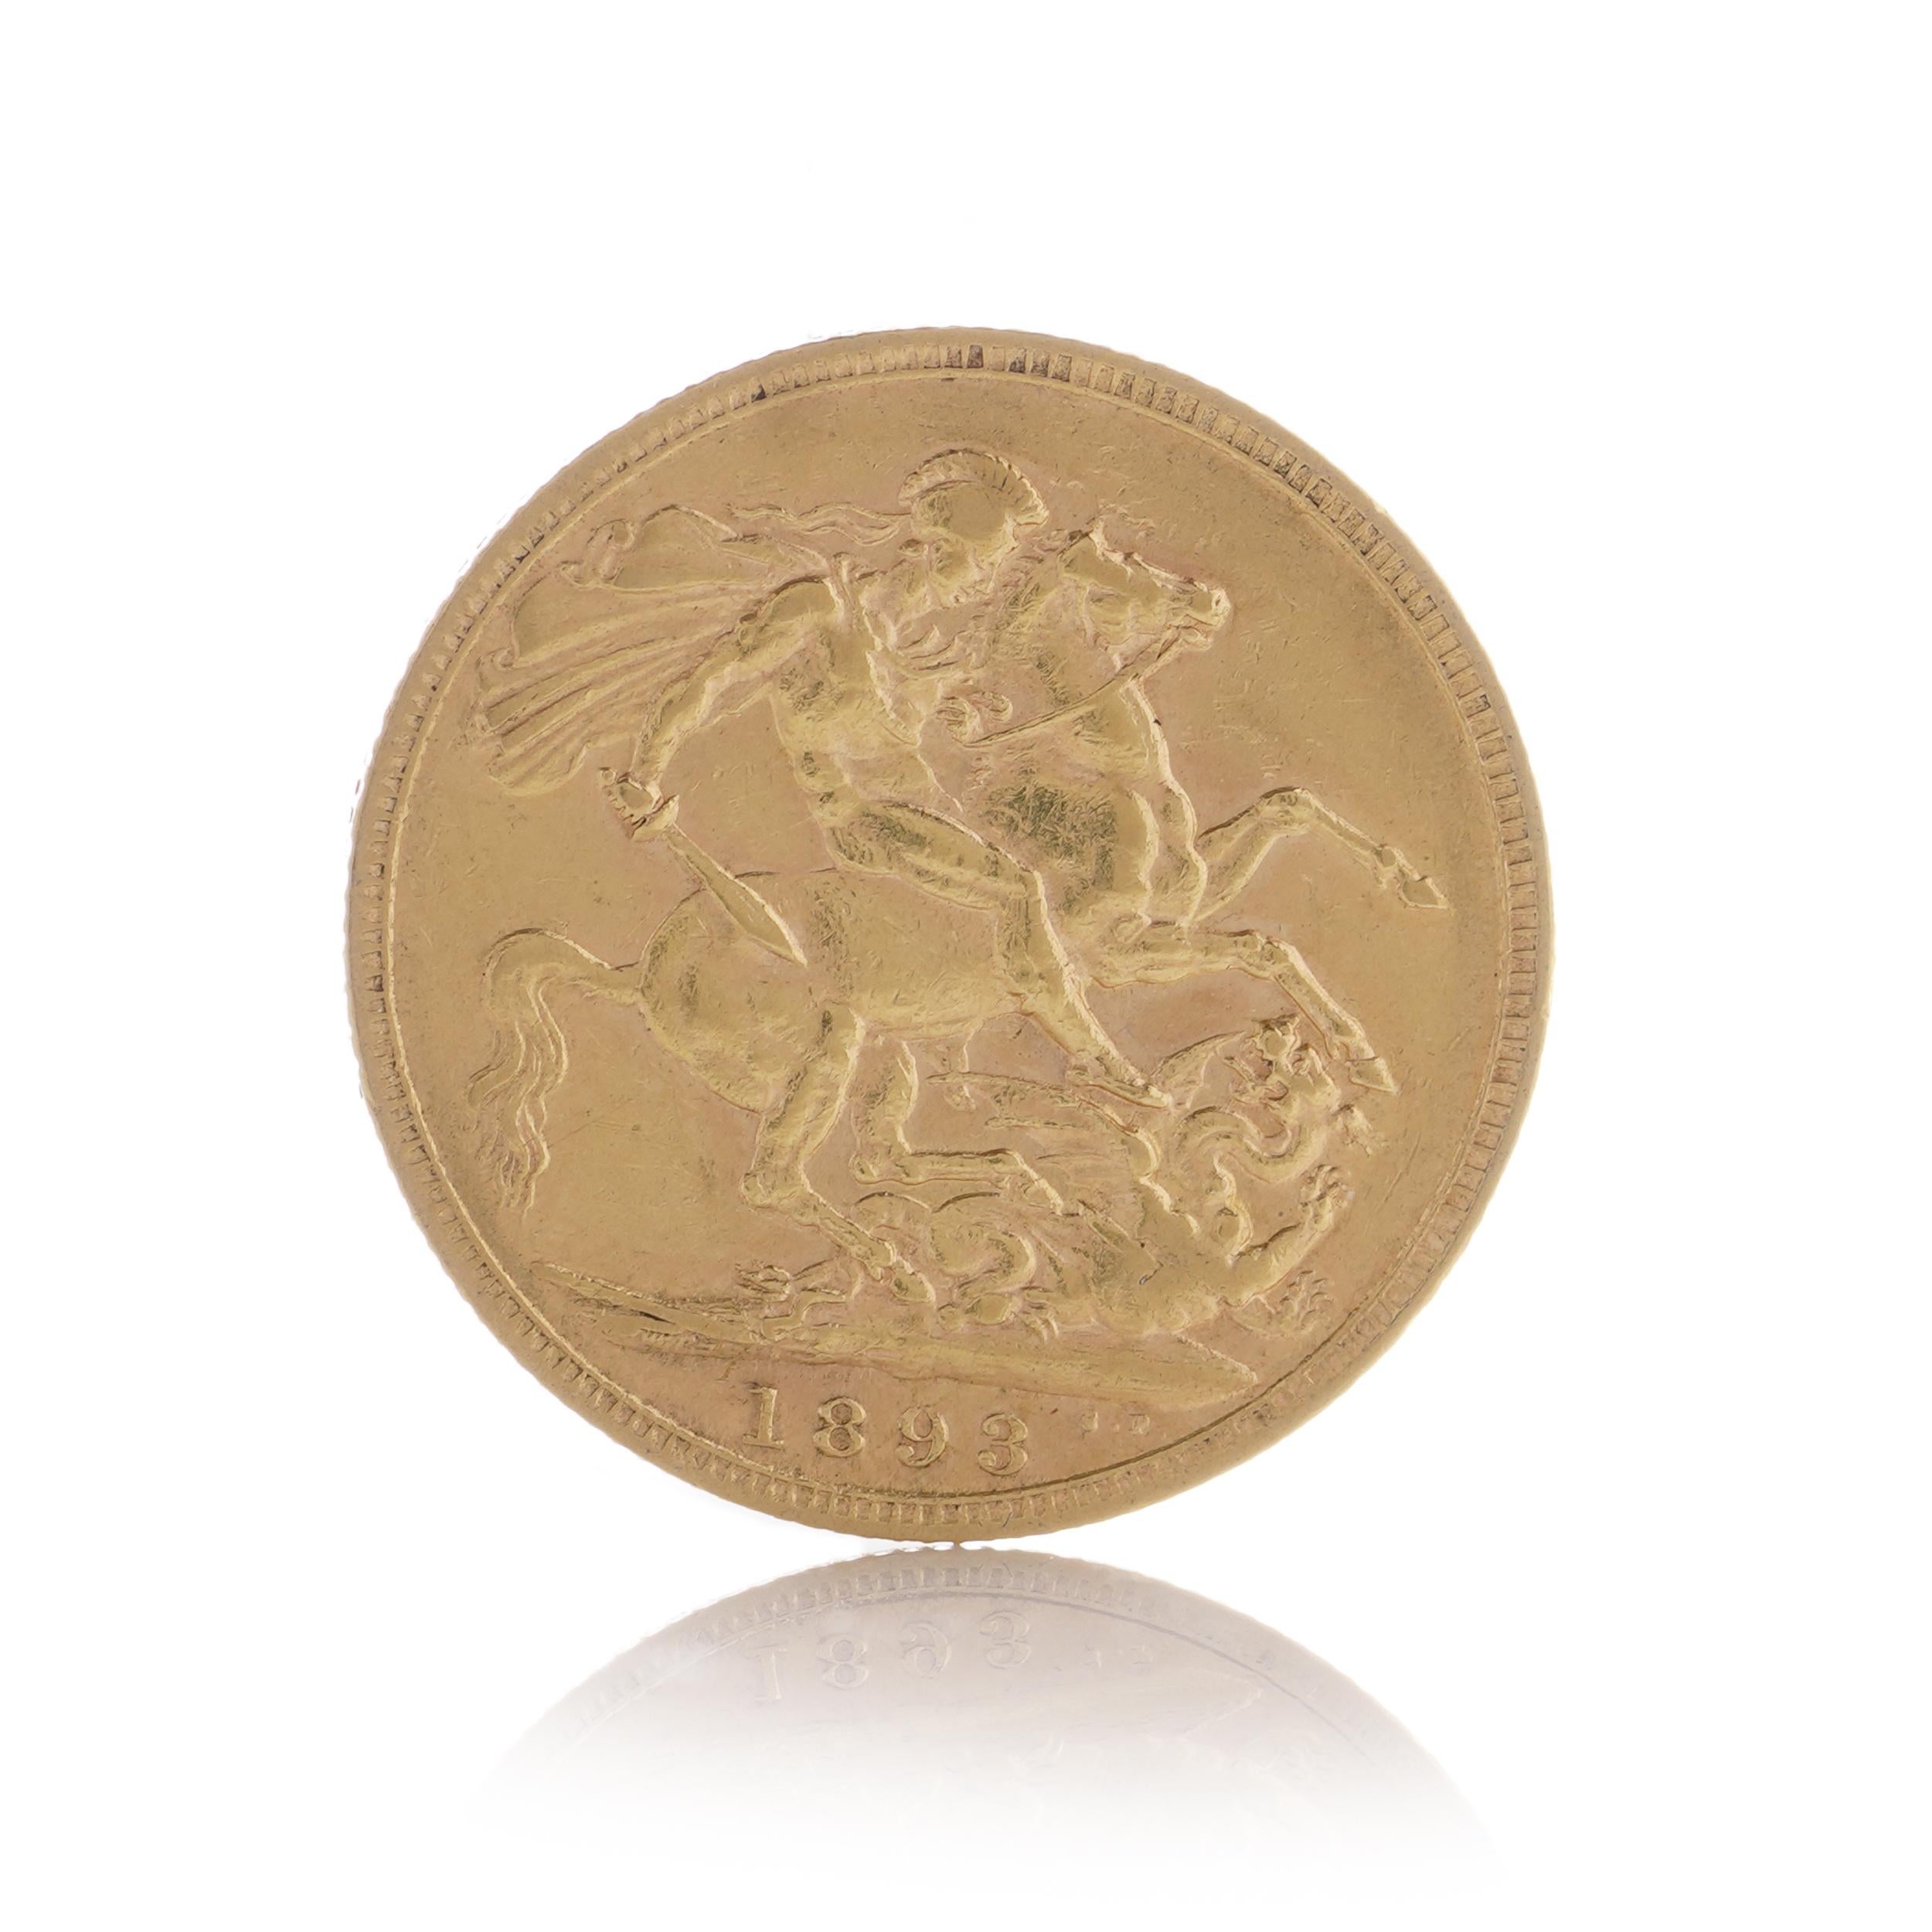 Il s'agit d'un souverain en or de 1893 à l'effigie de la reine Victoria, orné du motif traditionnel de Georges et Dragon et présenté dans une capsule en plastique. Le poinçon M indique la Monnaie de Melbourne en Australie.

Fabricant : Royal